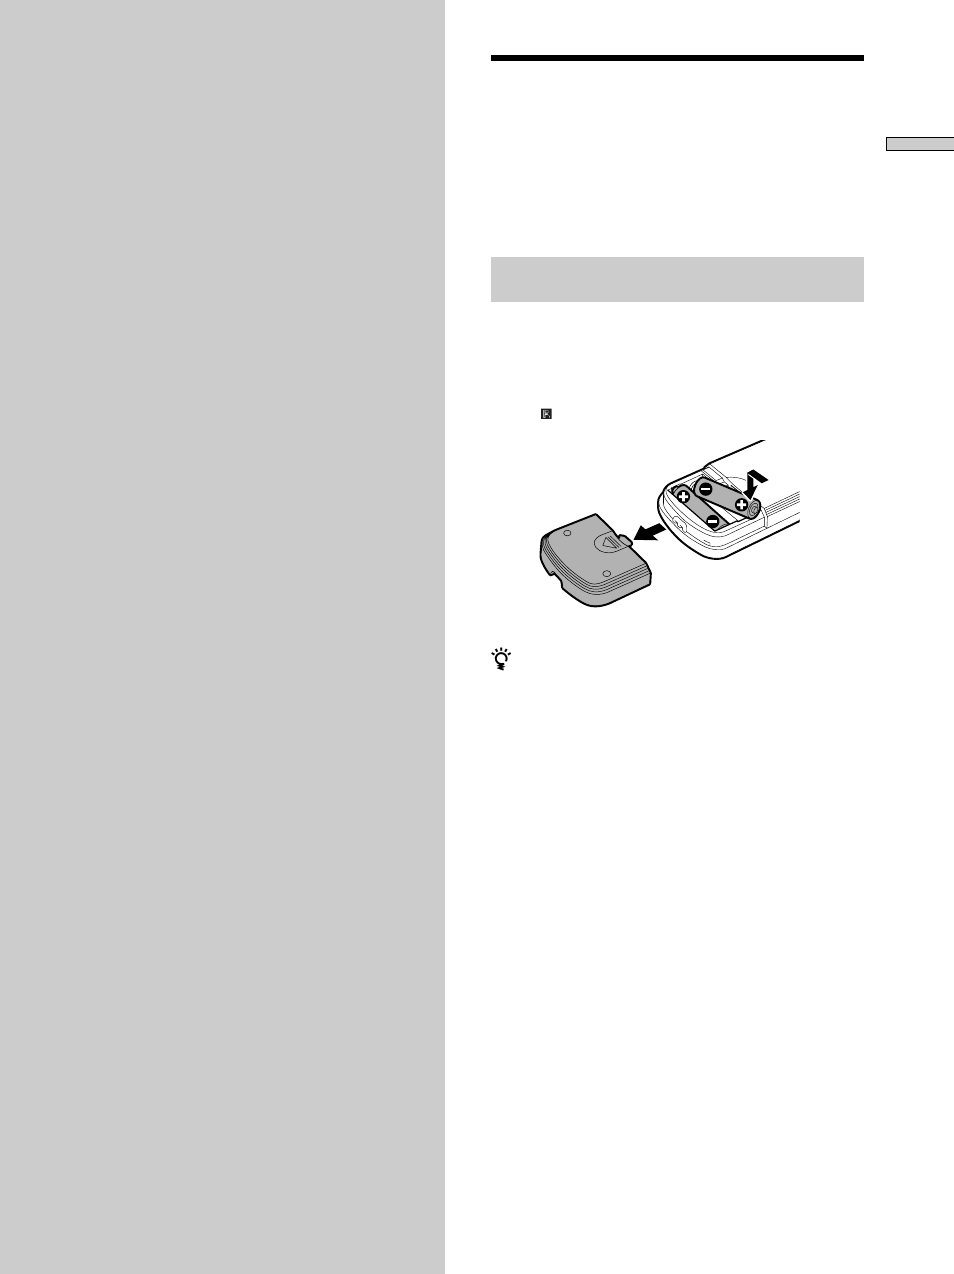 Procedimientos iniciales, Desembalaje | Sony DVP-S735D Manual del usuario | Página 7 / 164